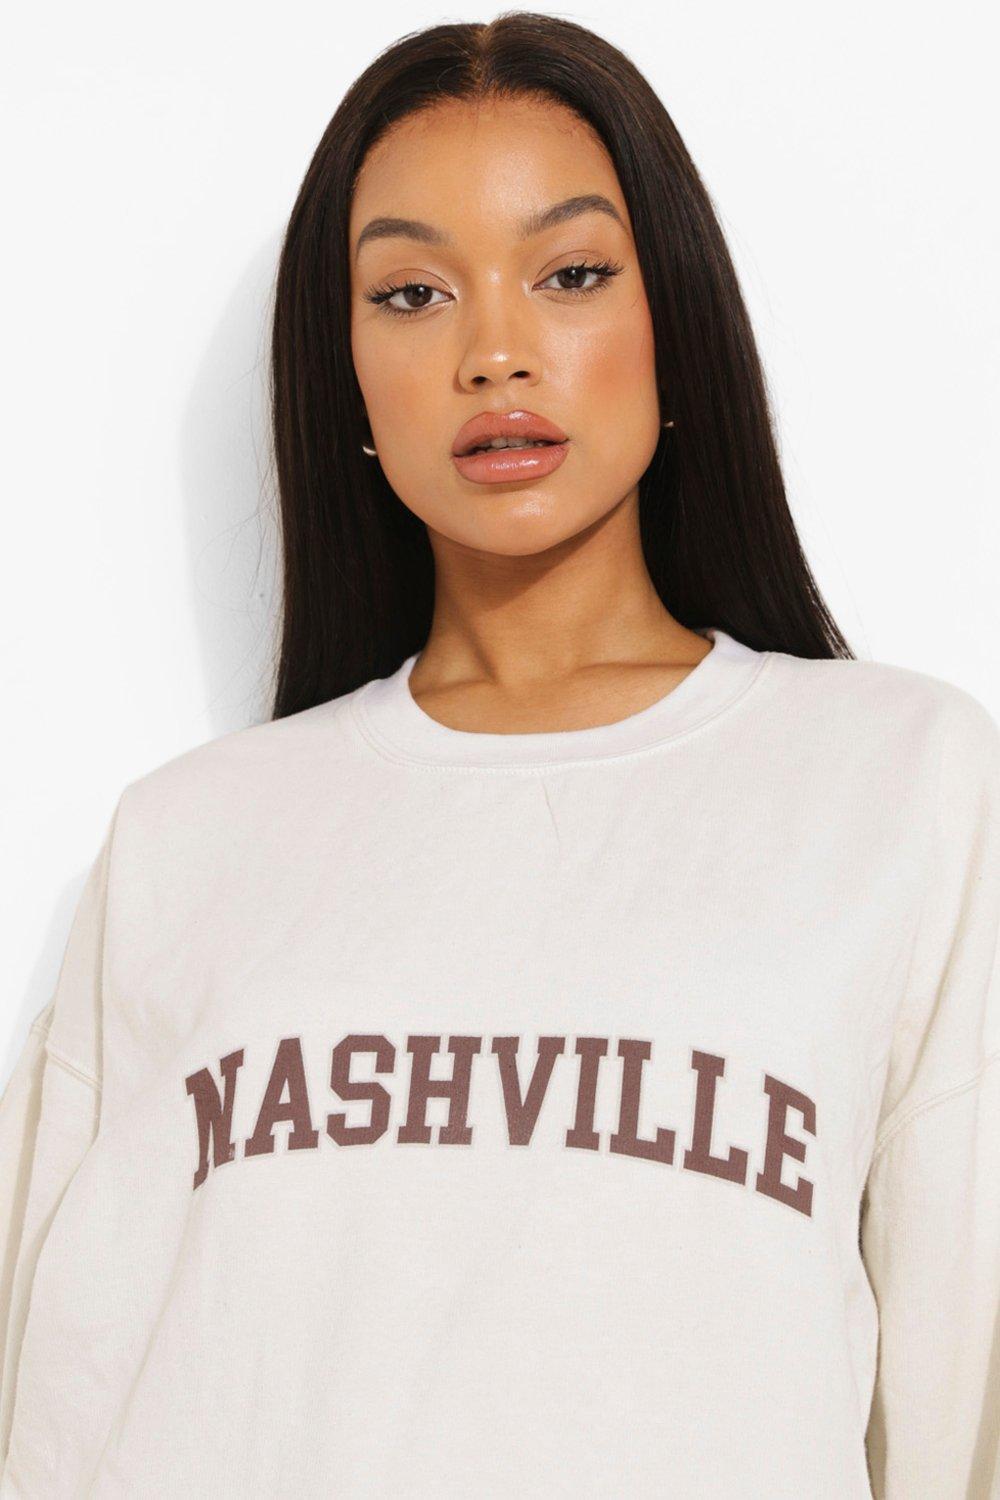 Womens Ladies Nashville Print Sweatshirt Slouch Hoodie Pullover Tops Jumper 